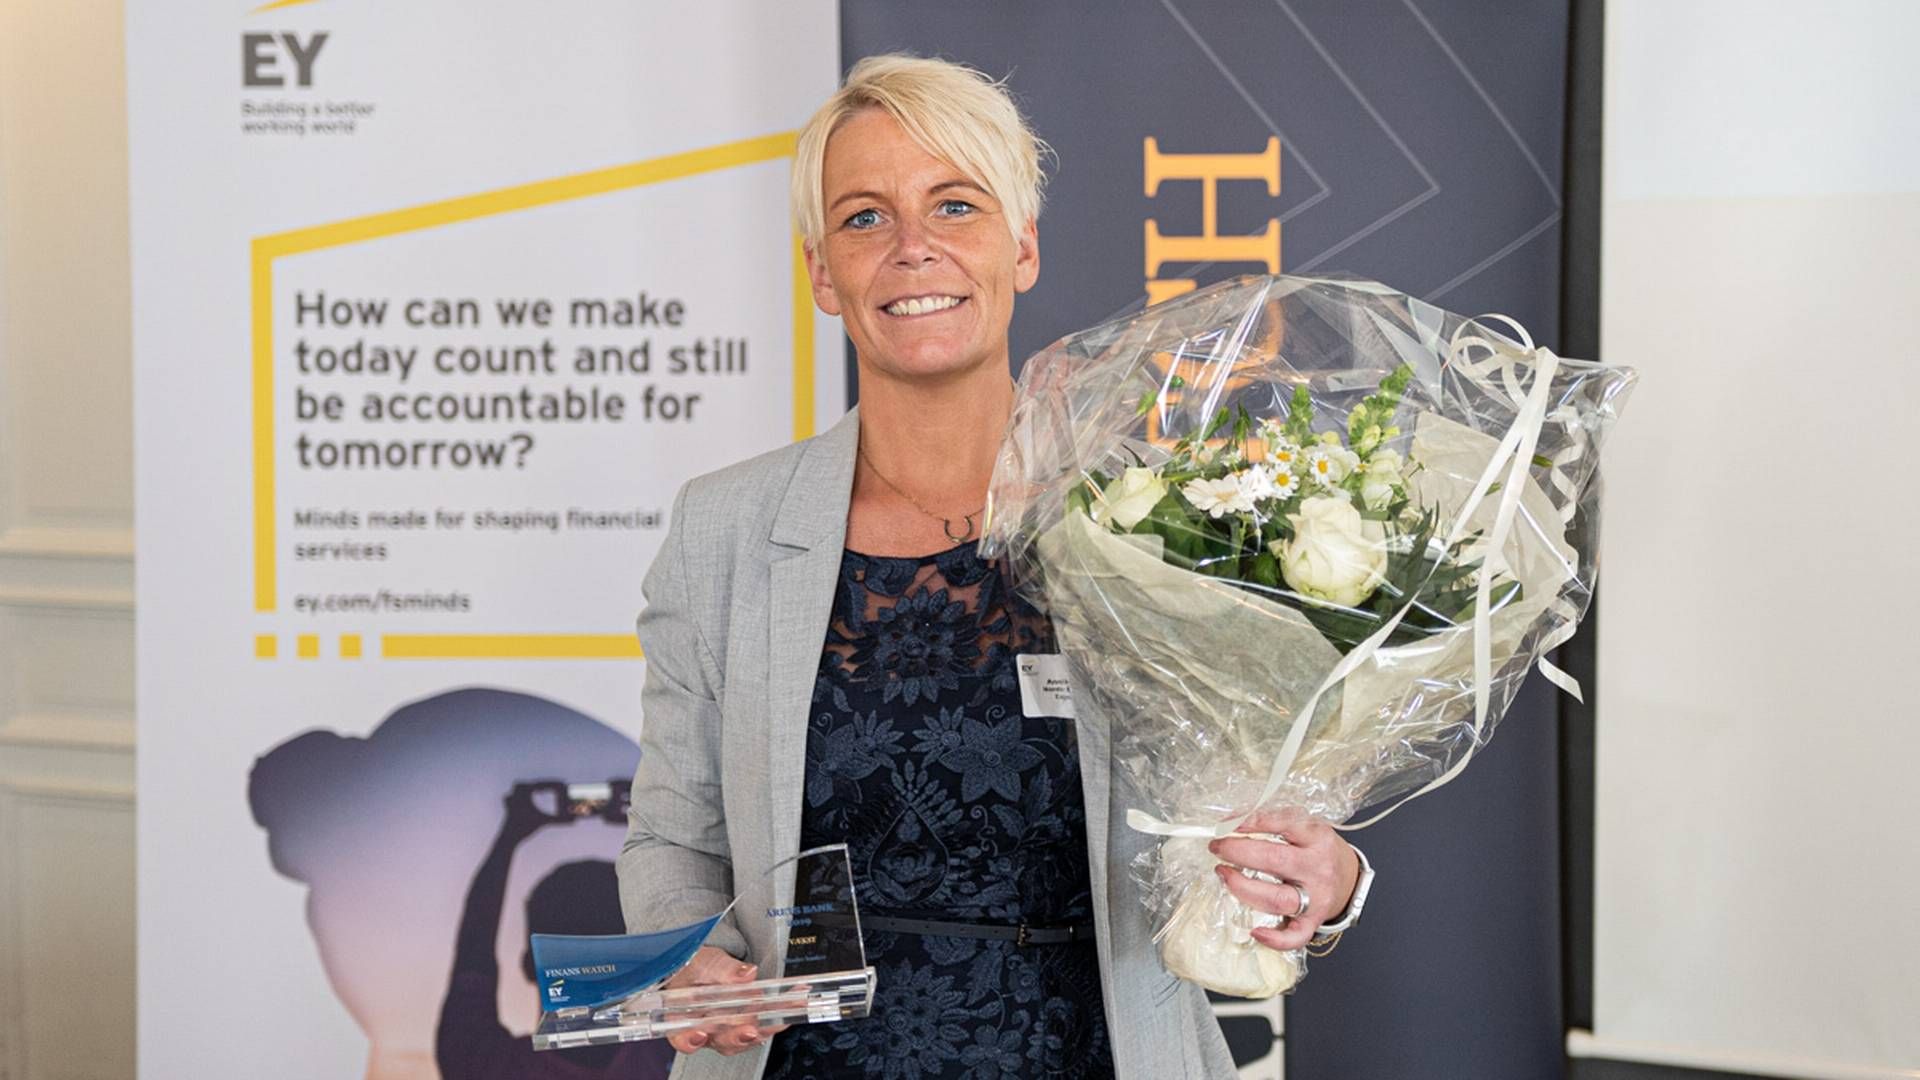 Annika Olsson er landechef for Express Bank i Danmark. I 2019 vandt banken en pris for højeste vækst i nettorente- og gebyrindtægter ved prisuddelingen Årets Finansvirksomhed. | Foto: Jan Bjarke Mindegaard